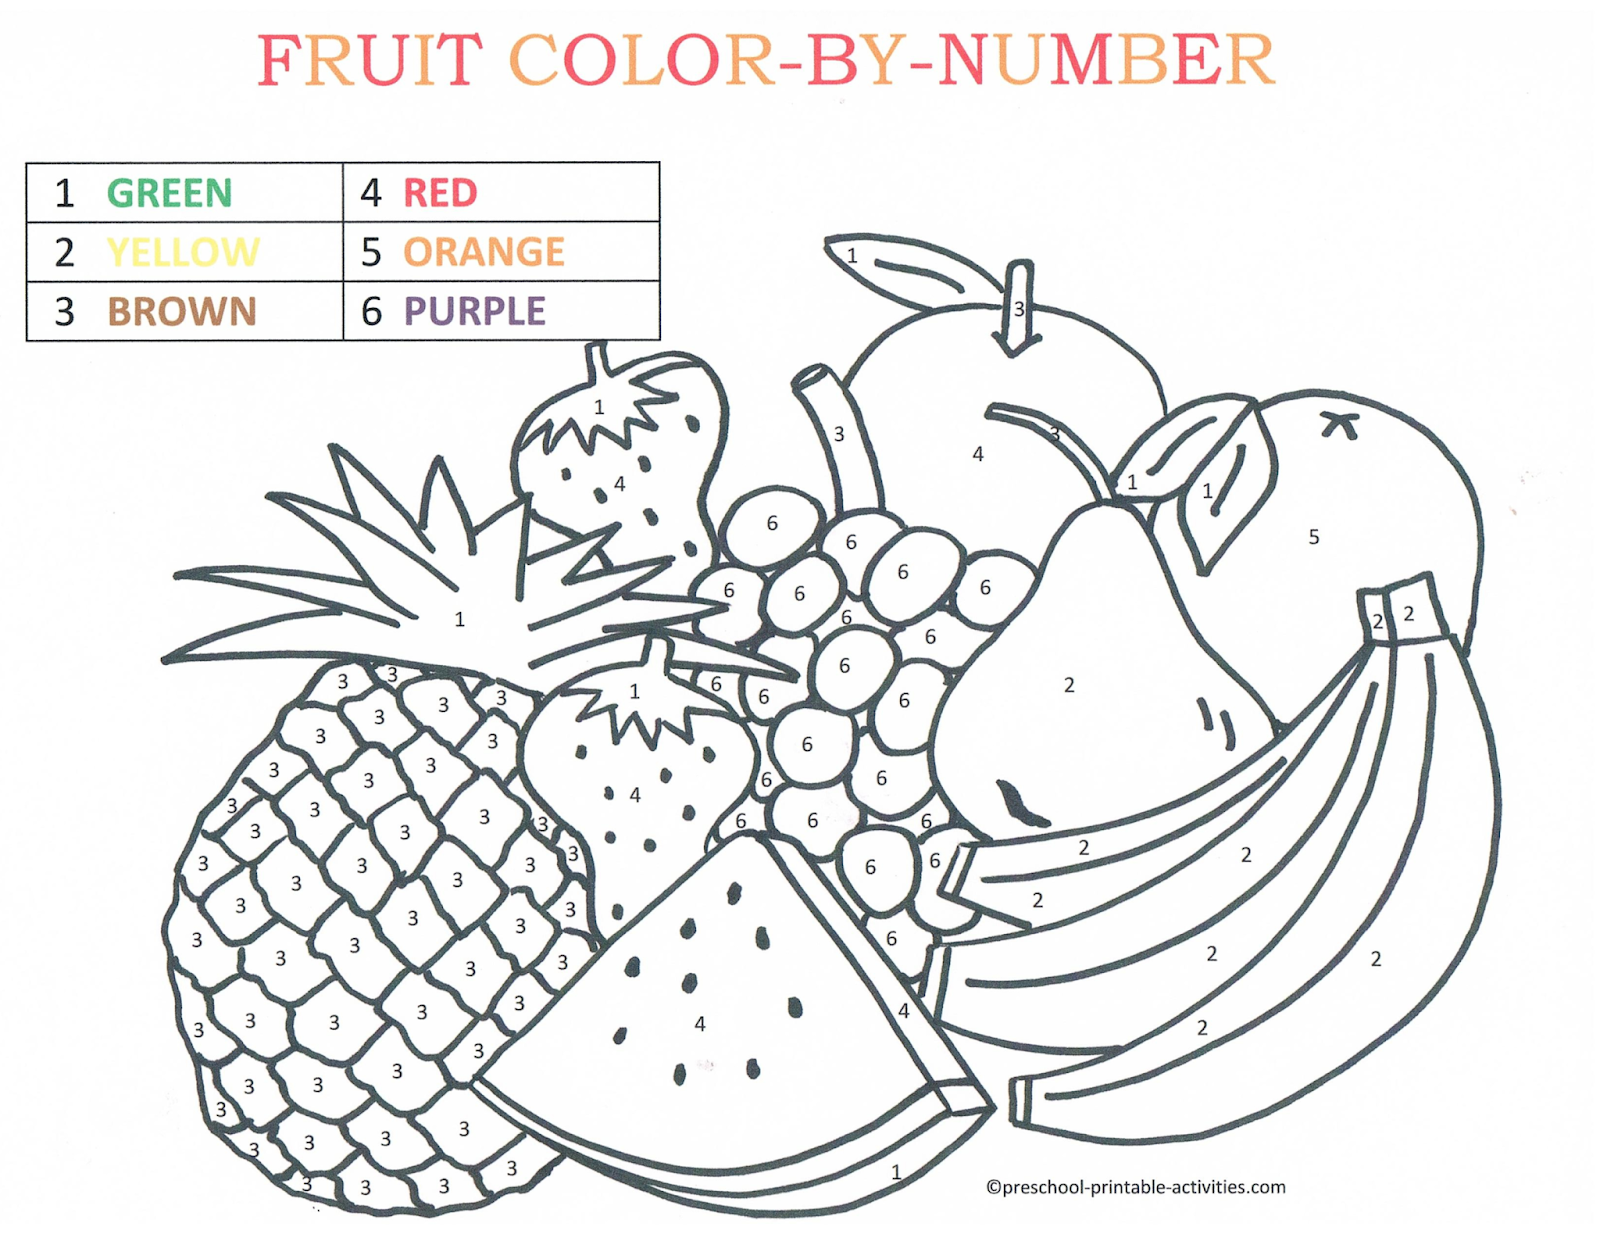 Fruits число. Раскрась фрукты по цифрам. Раскраска по цифрам фрукты. Раскраска по цифрам овощи и фрукты. Раскраска по номерам фрукты для детей.